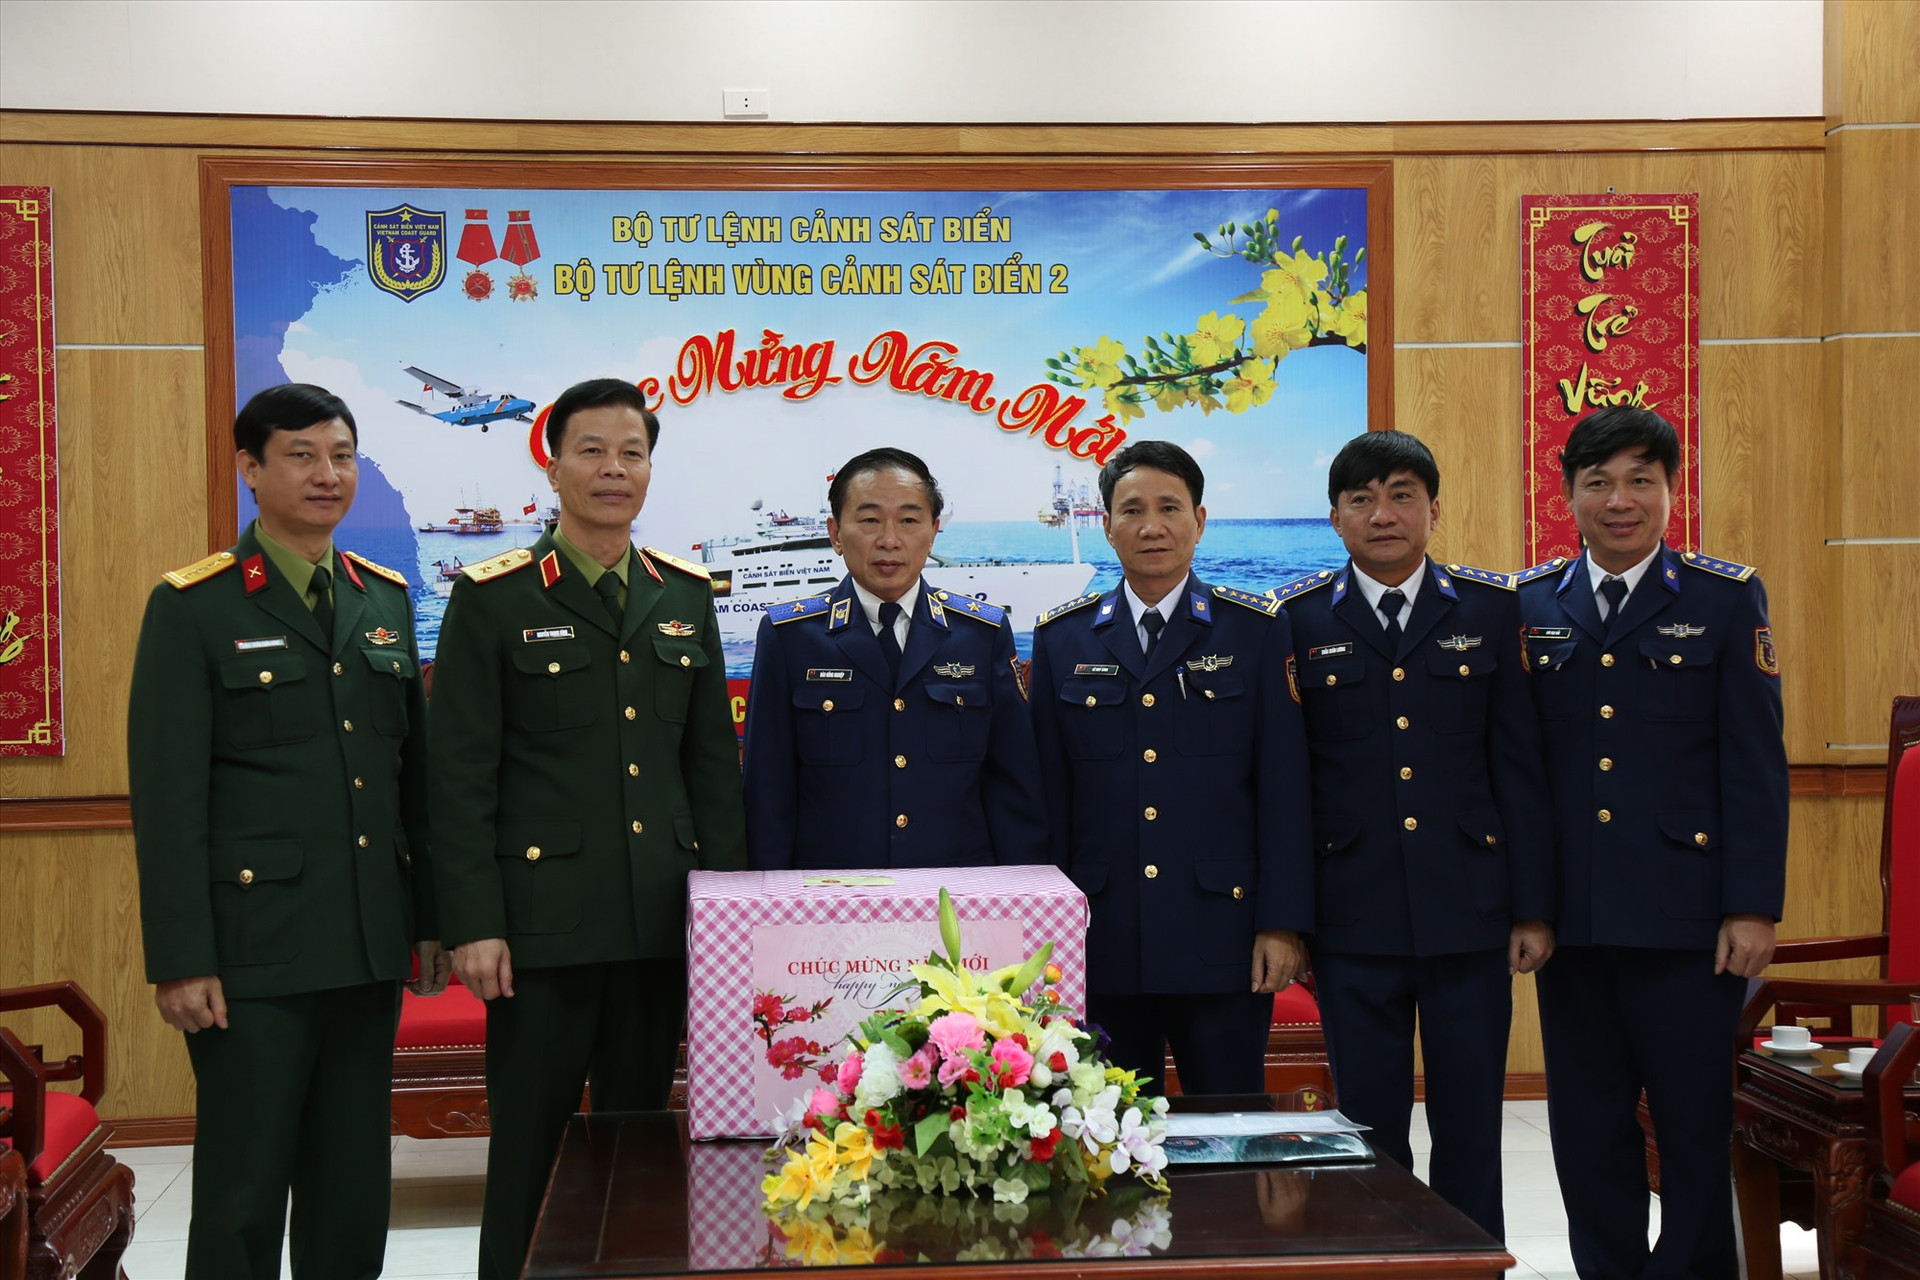 Trung tướng Nguyễn Trọng Bình tặng quà cho Bộ tư lệnh Vùng Cảnh sát biển 2 nhân chuyến thăm. Ảnh: N.T